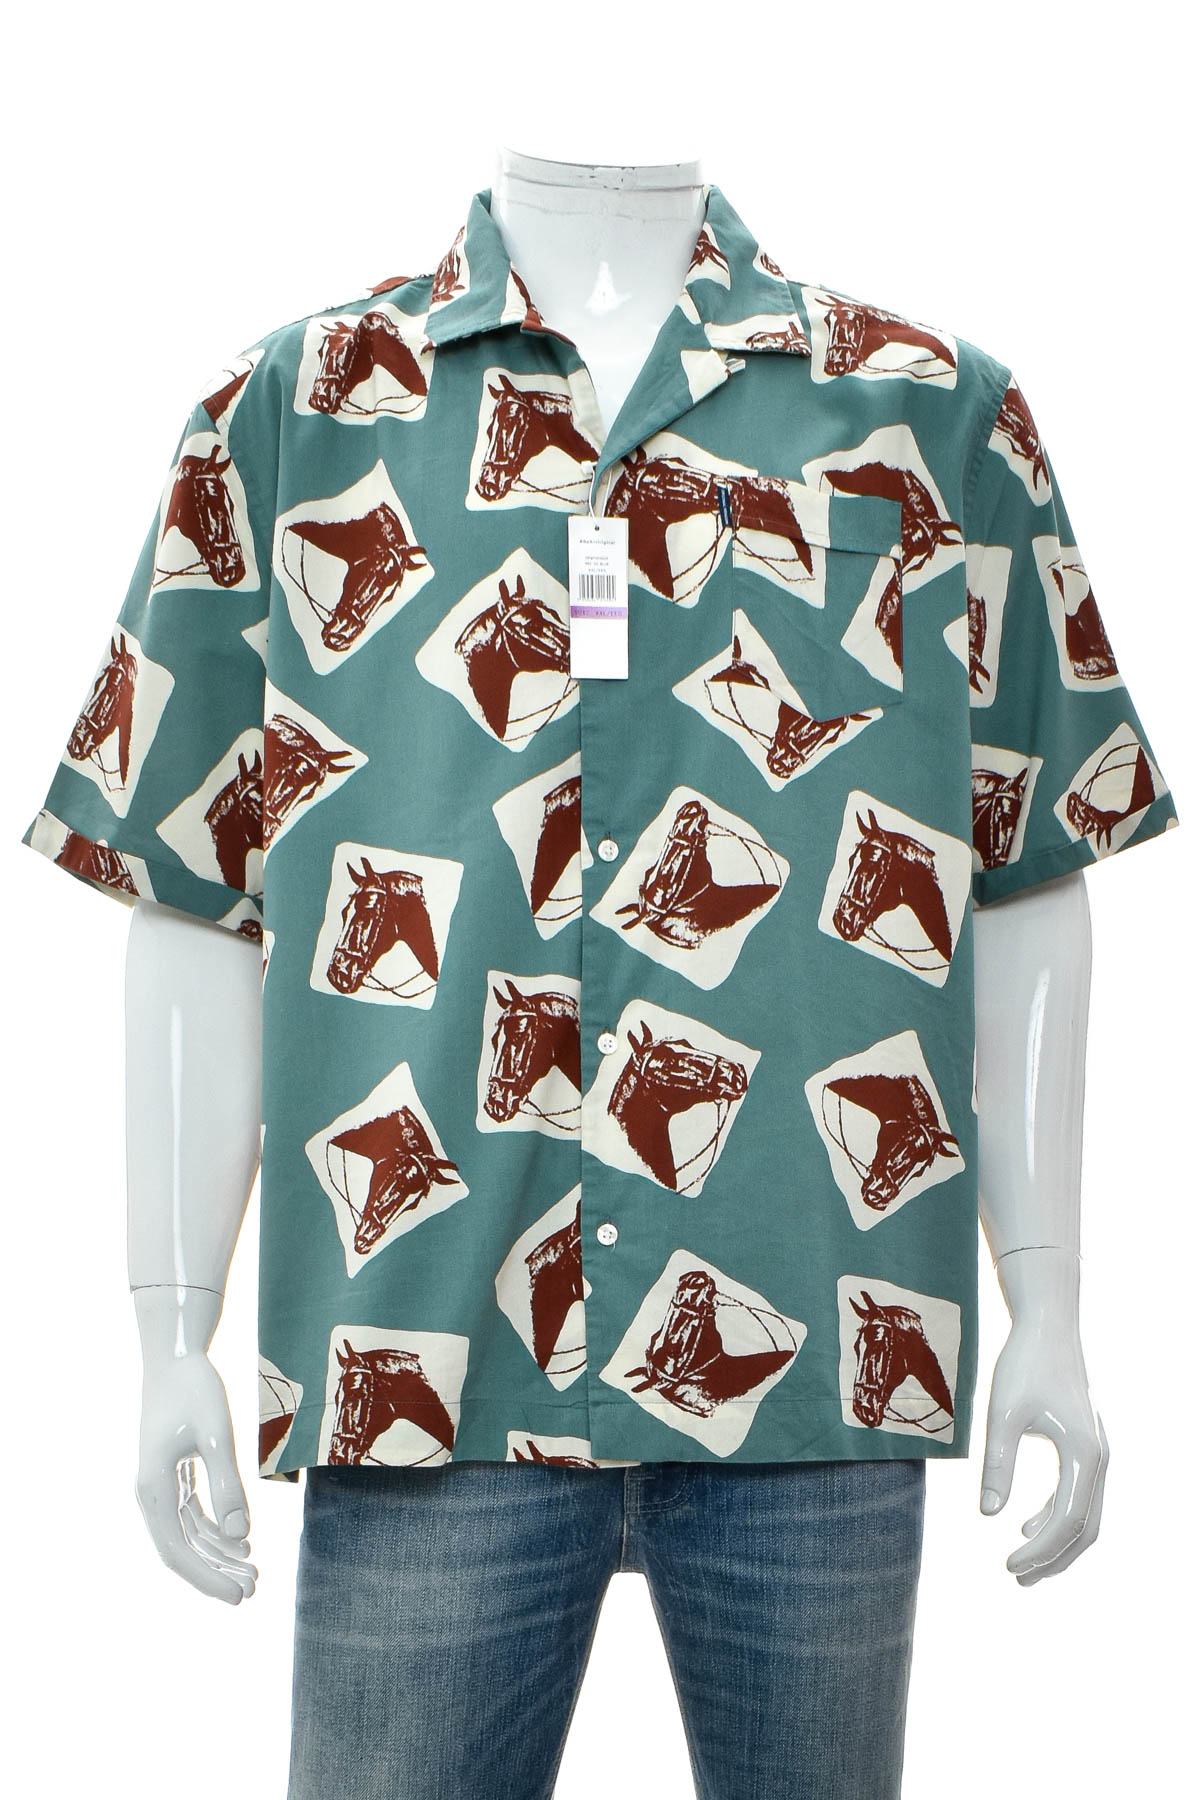 Ανδρικό πουκάμισο - Penguin - 0